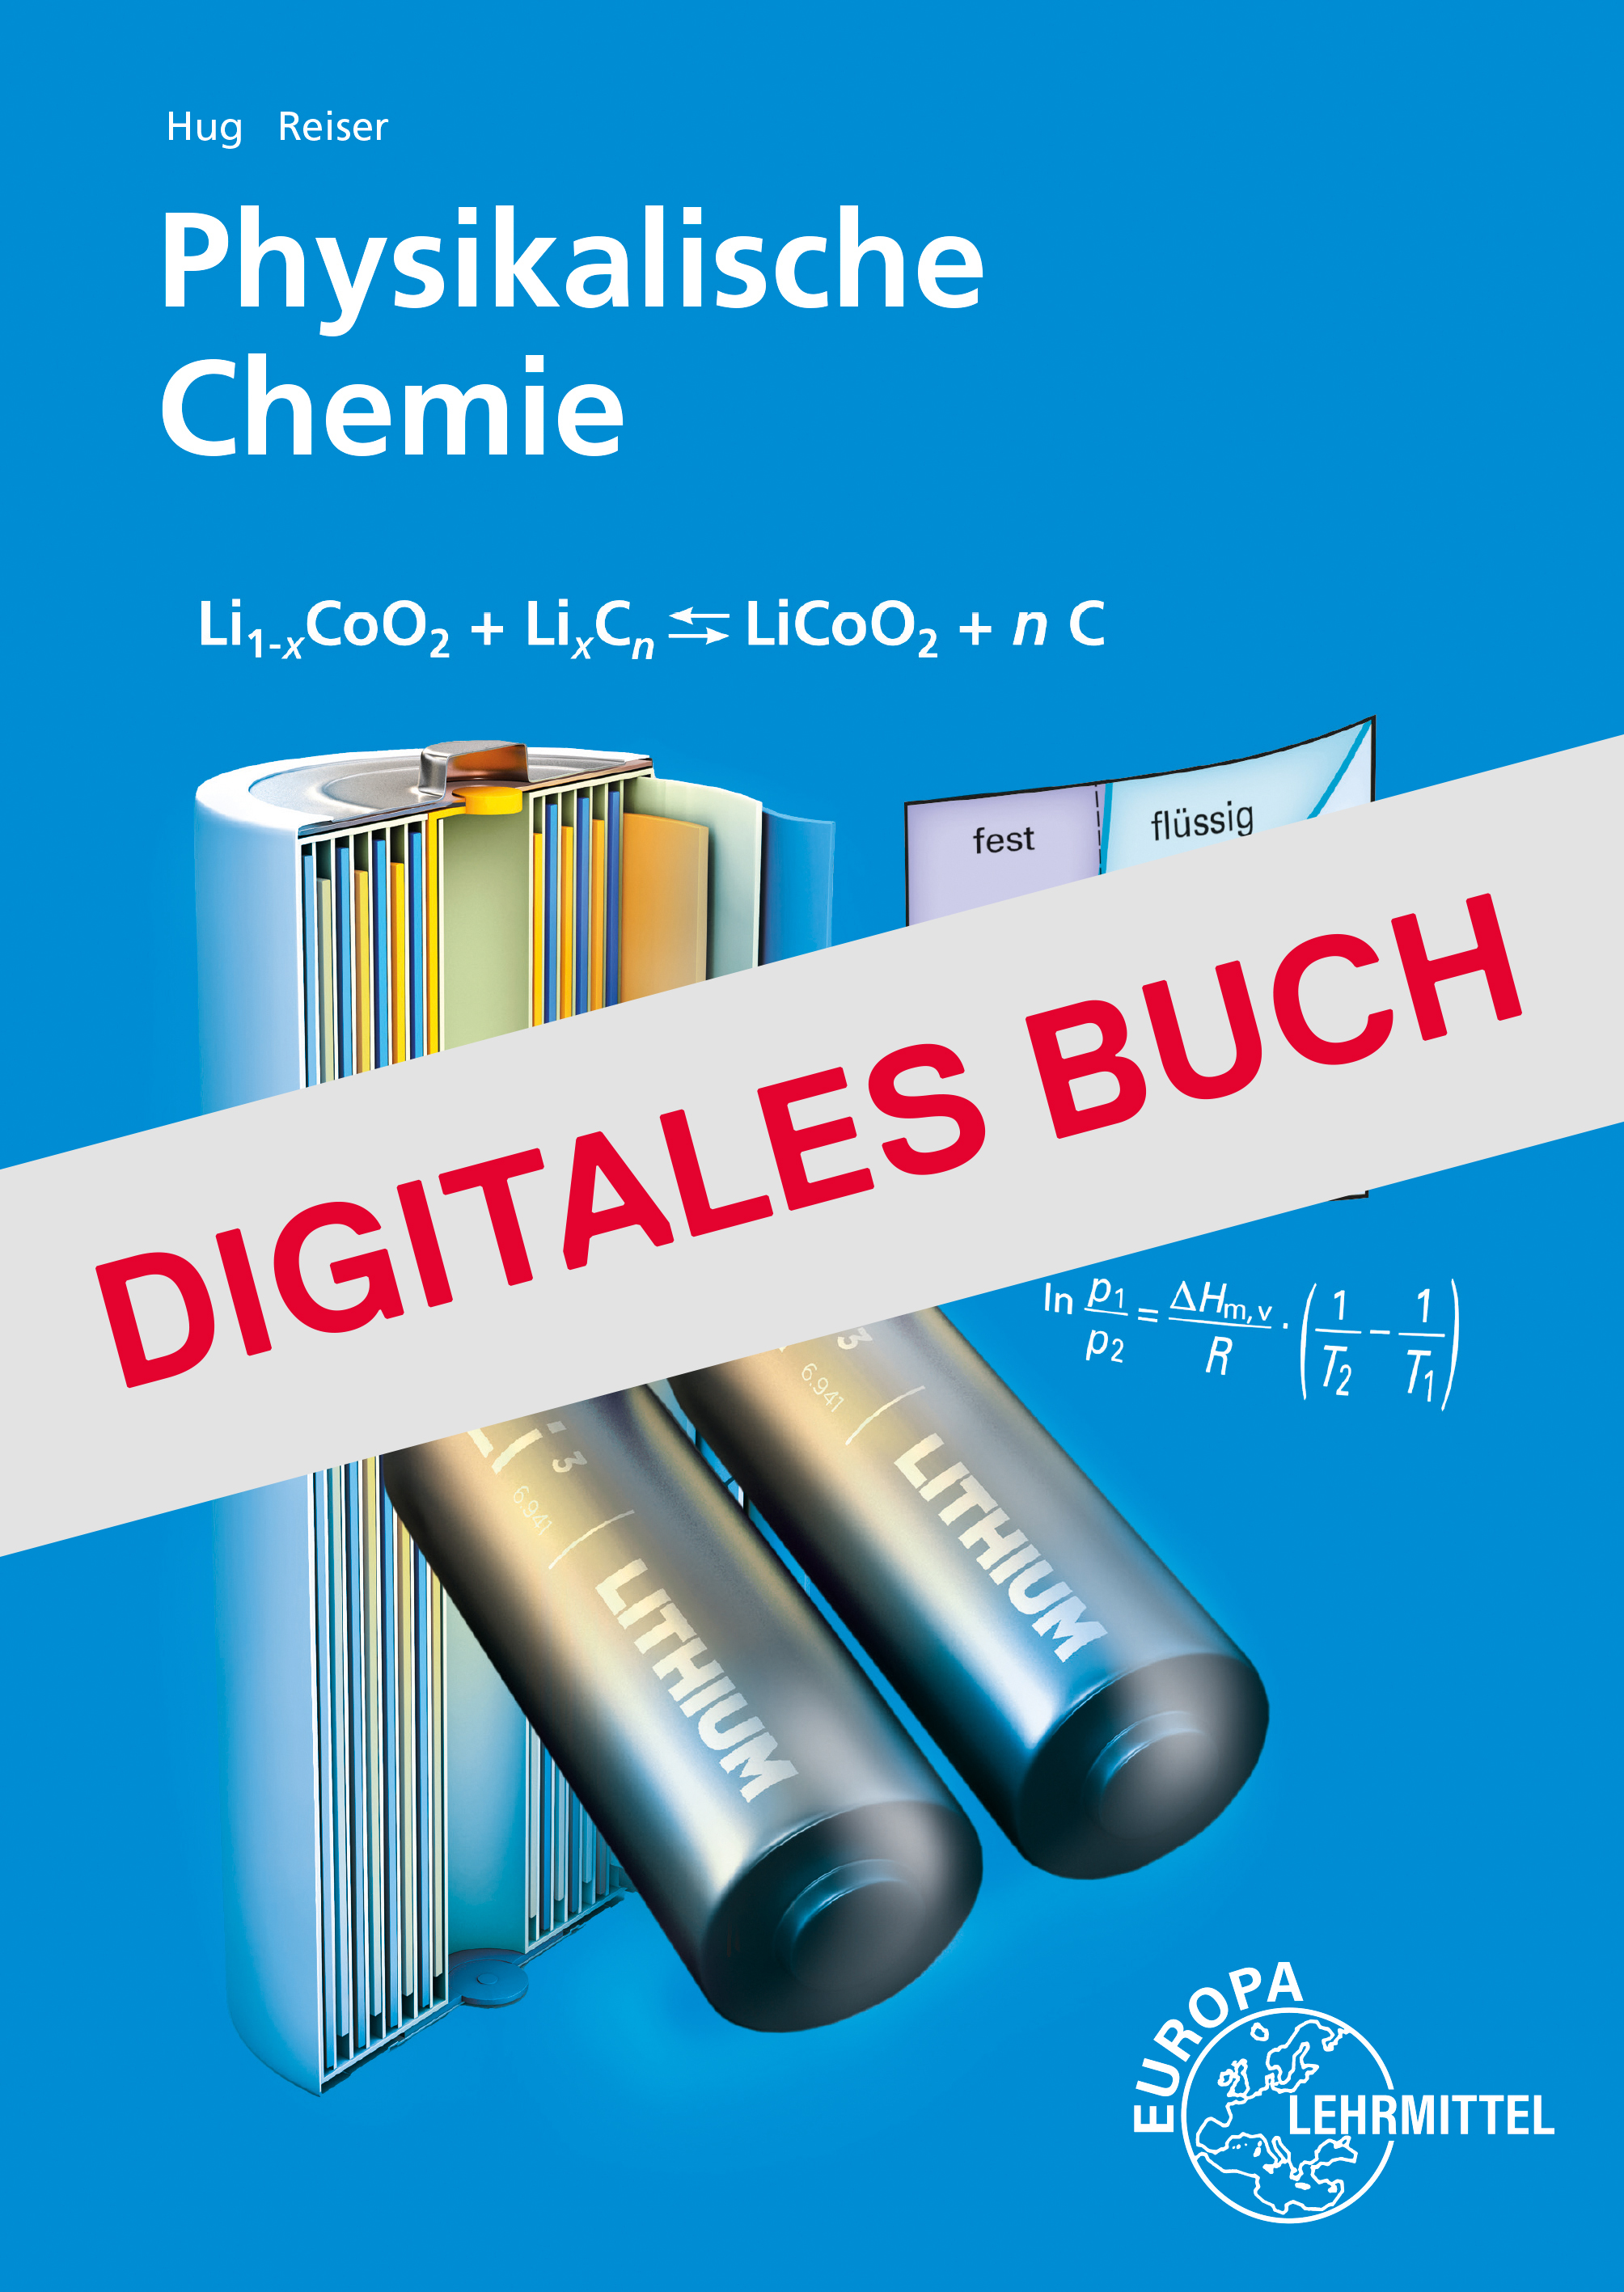 Physikalische Chemie - Digitales Buch